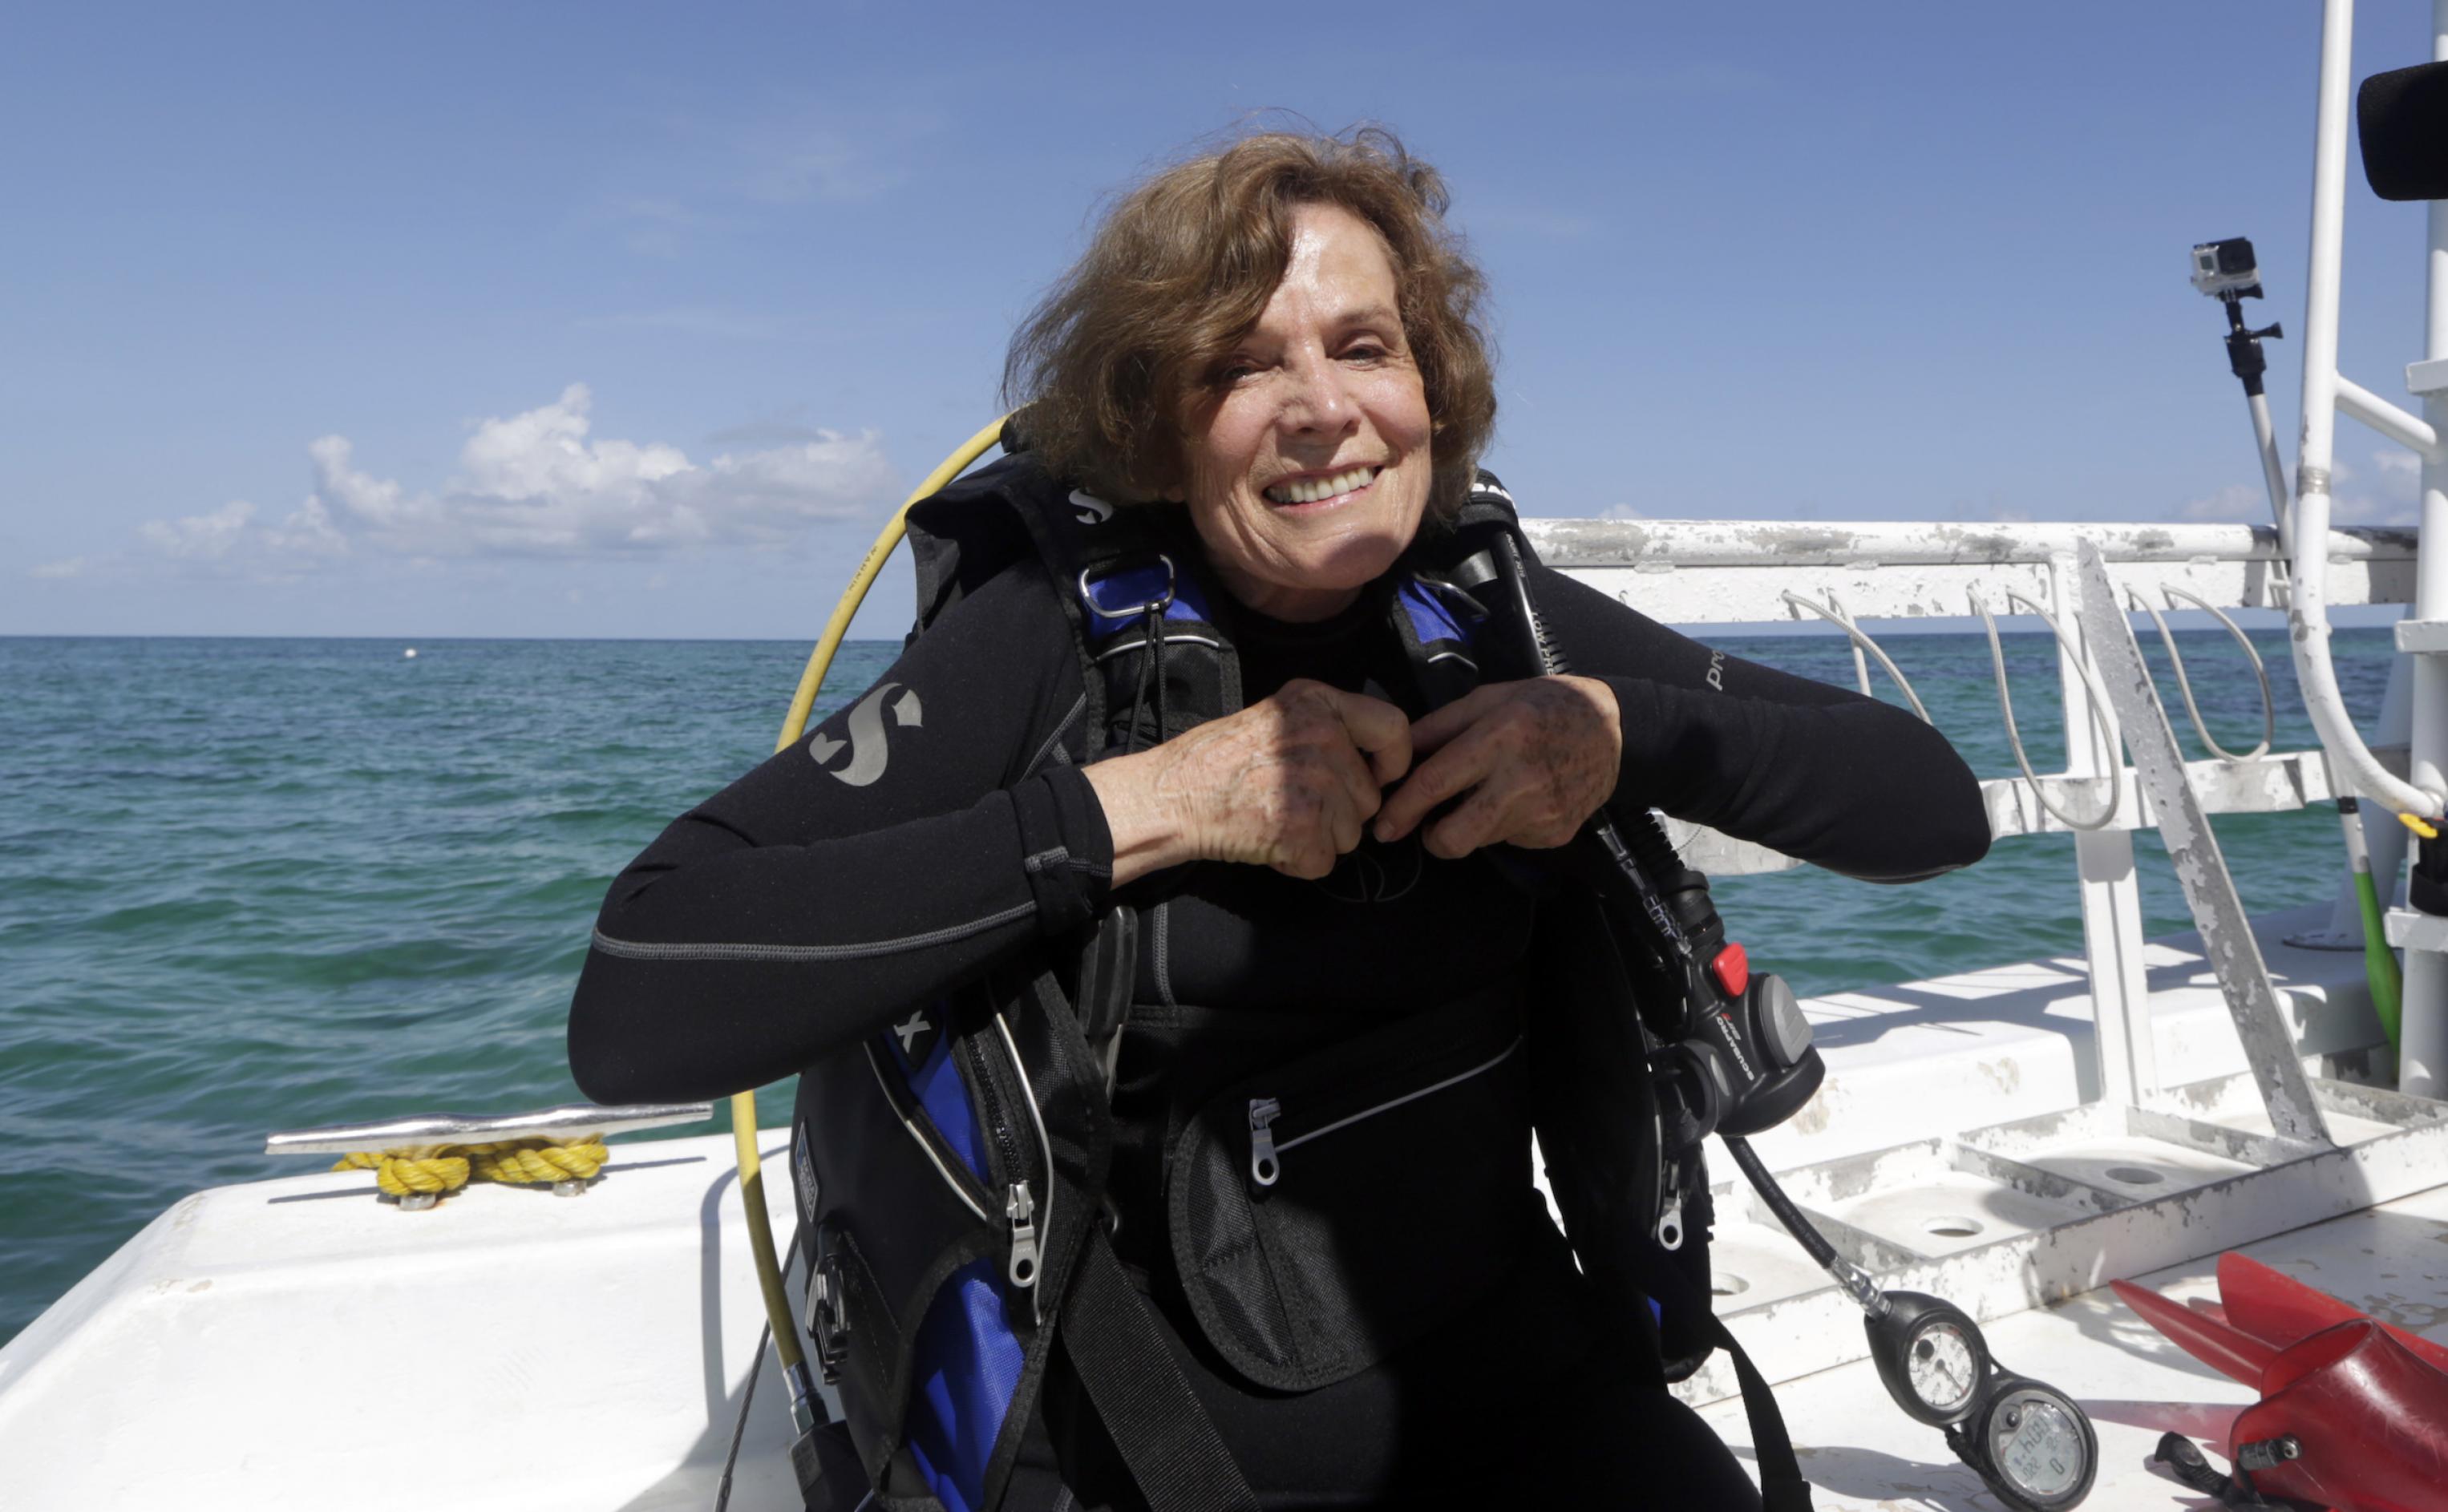 Das Bild zeigt die legendäre Meeresbiologin Sylvia Earle im Tauchanzug im Wasser. Sie hat mit ihrer Organisation „Mission Blue“ das marine Schutzgebietsnetz der „Hope Spots“ initiiert